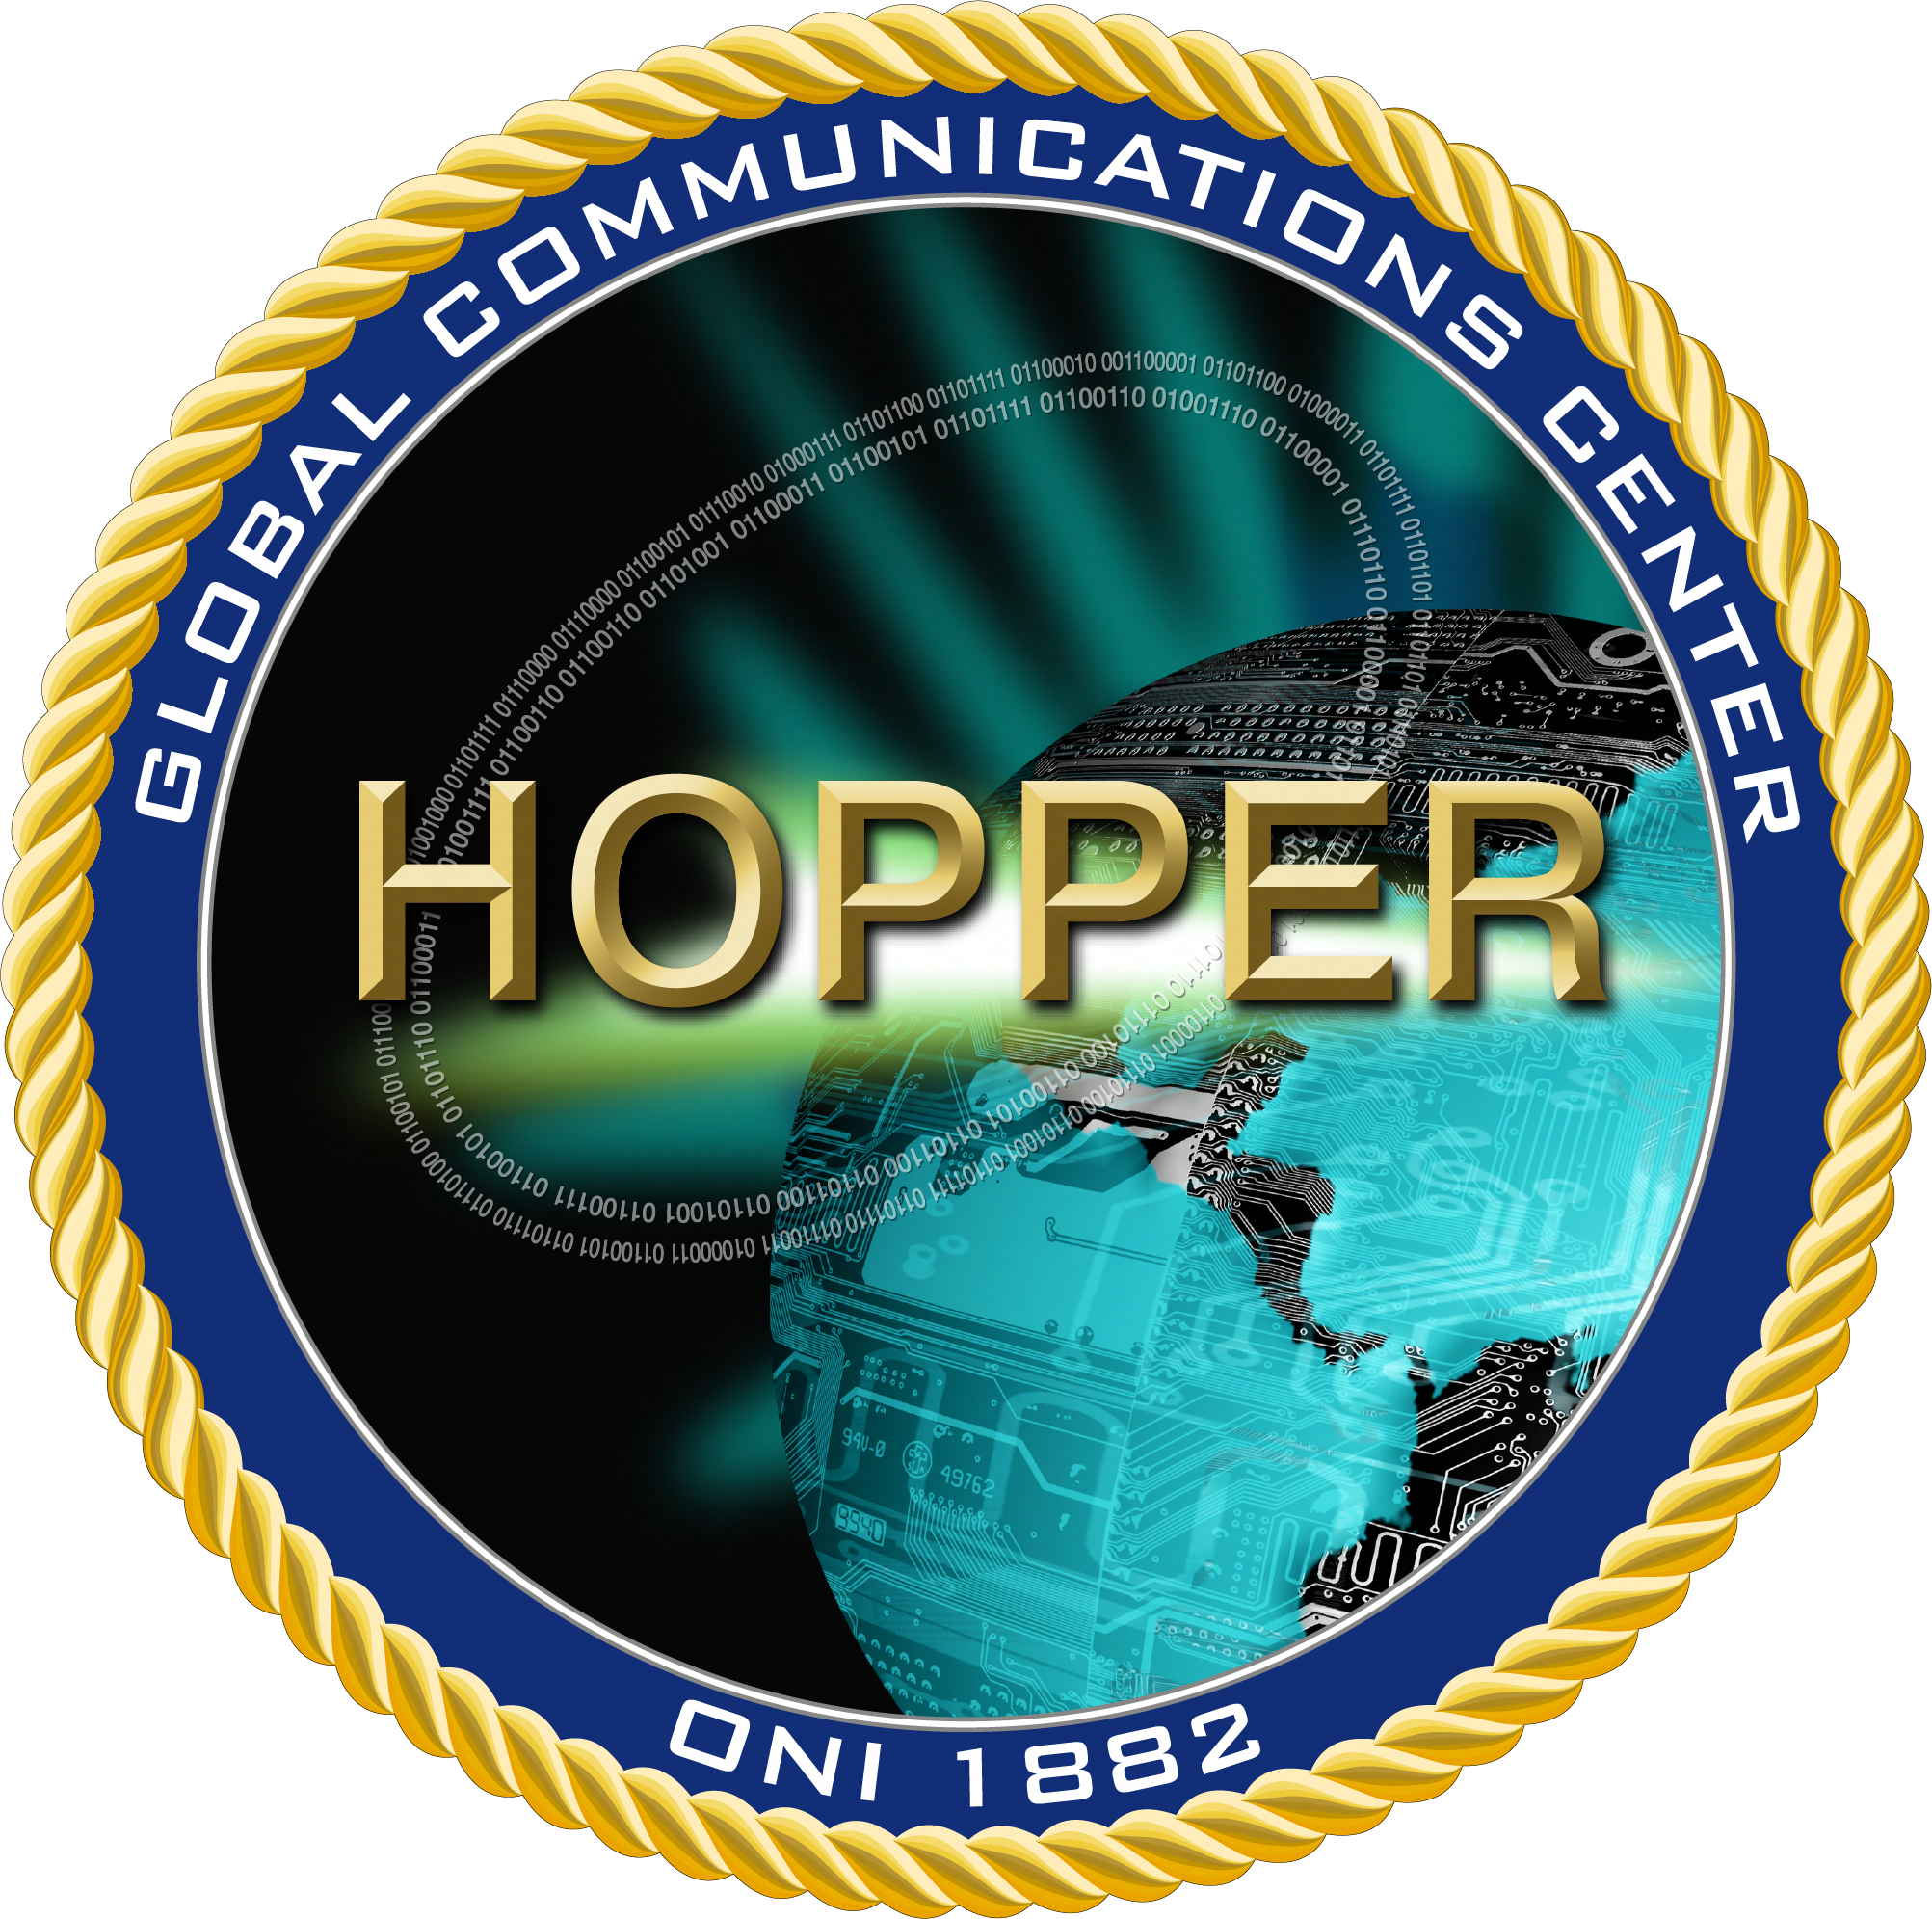 Hopper Global Communication Center Seal